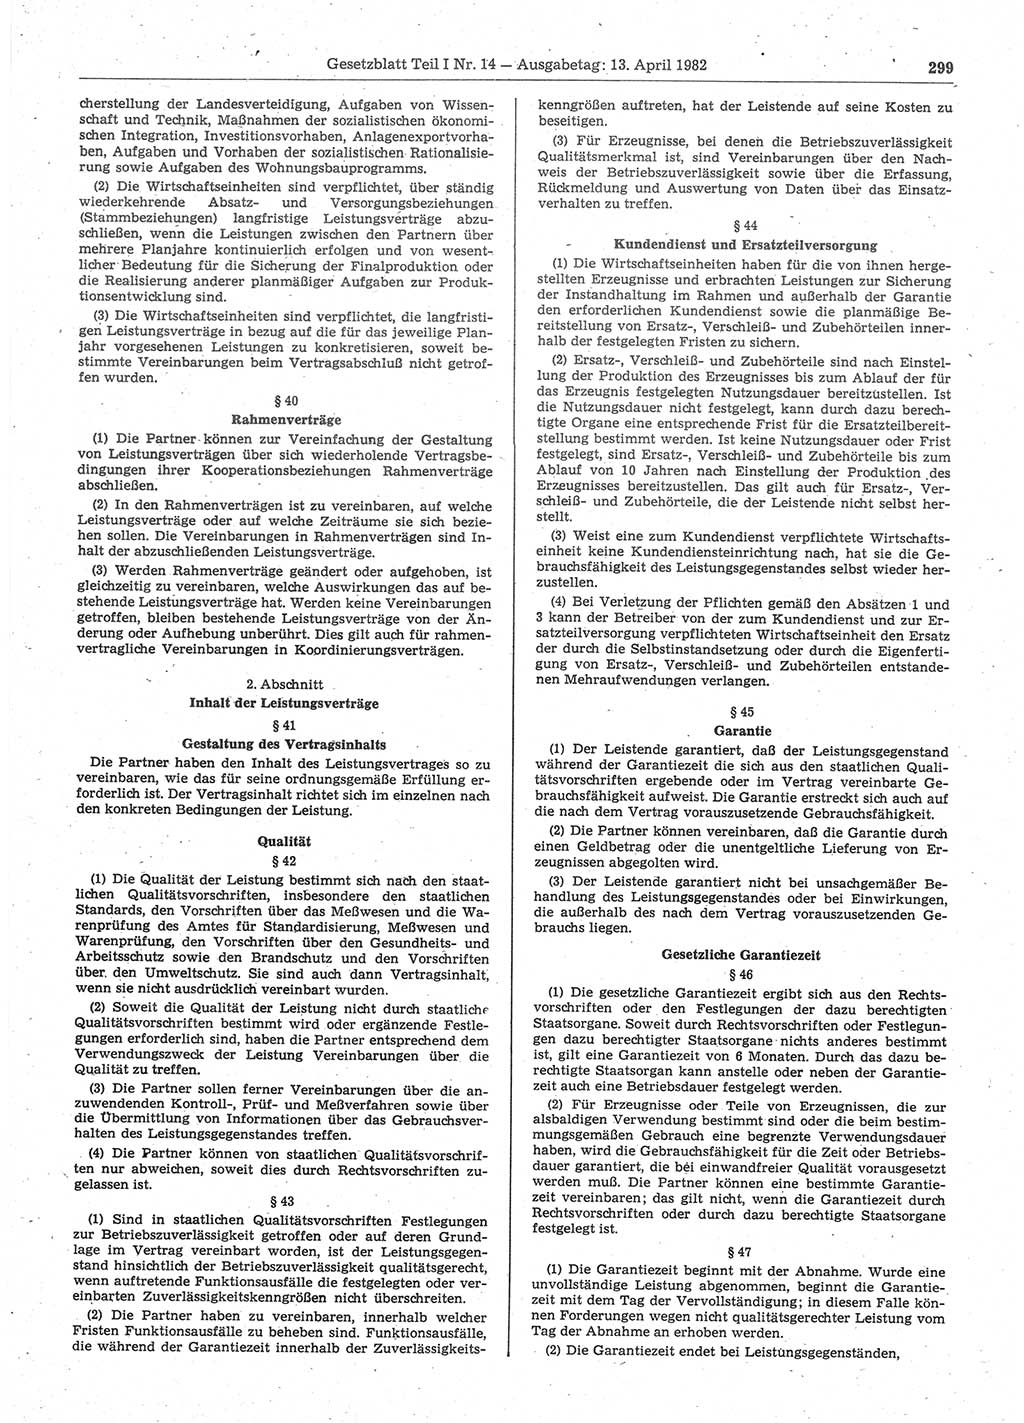 Gesetzblatt (GBl.) der Deutschen Demokratischen Republik (DDR) Teil Ⅰ 1982, Seite 299 (GBl. DDR Ⅰ 1982, S. 299)